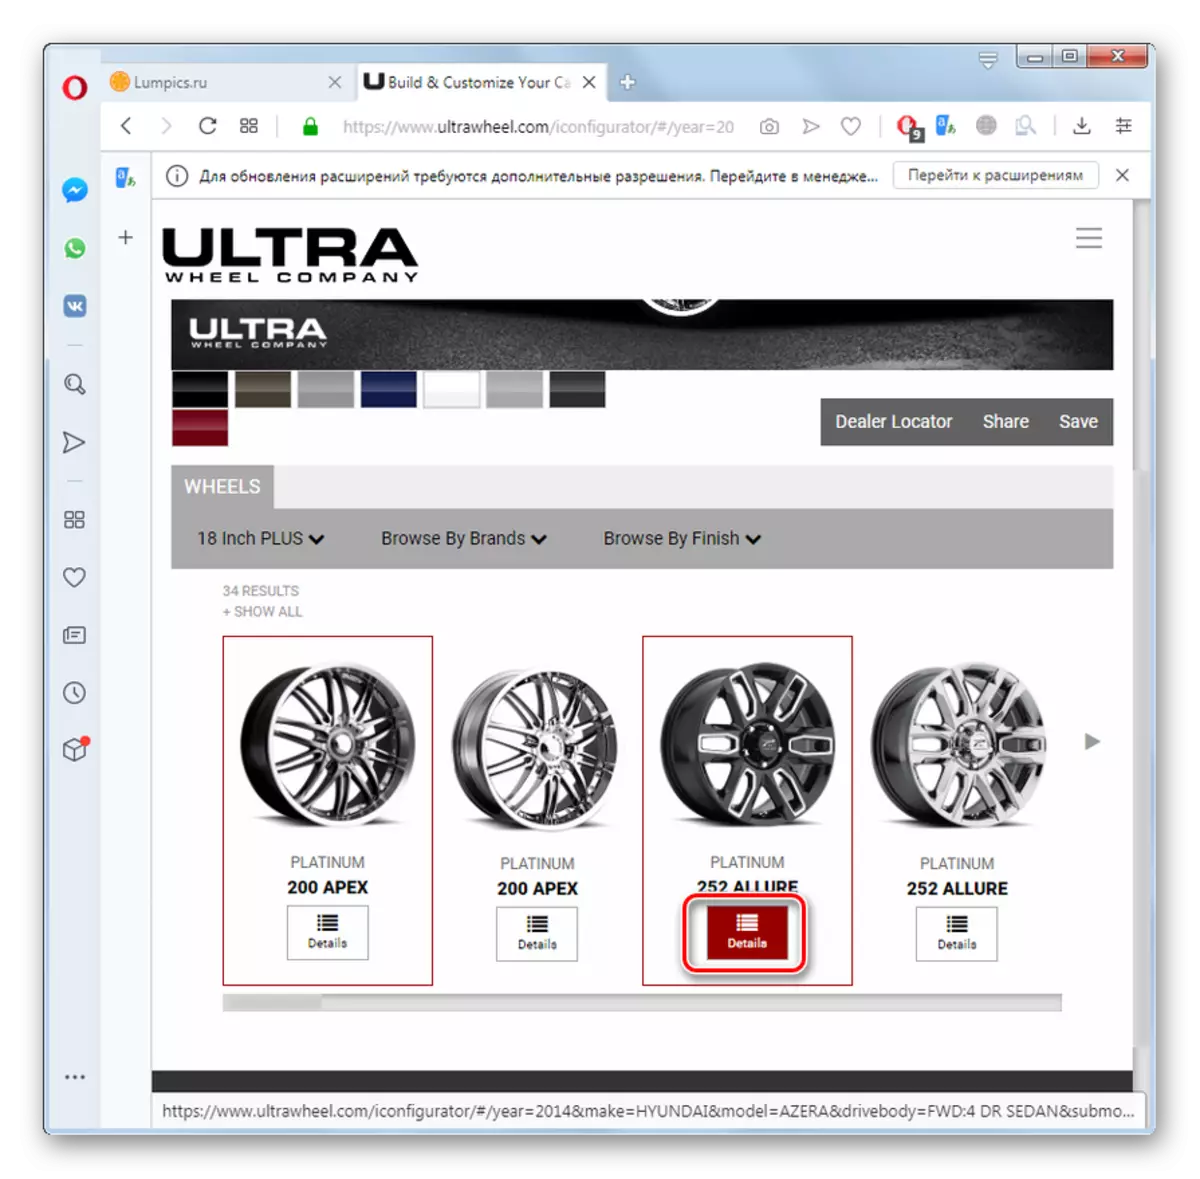 Opera tarayıcısında UltraWheel Web Sitesinde tekerlek kümesi hakkında bilgi görüntülemee gidin.